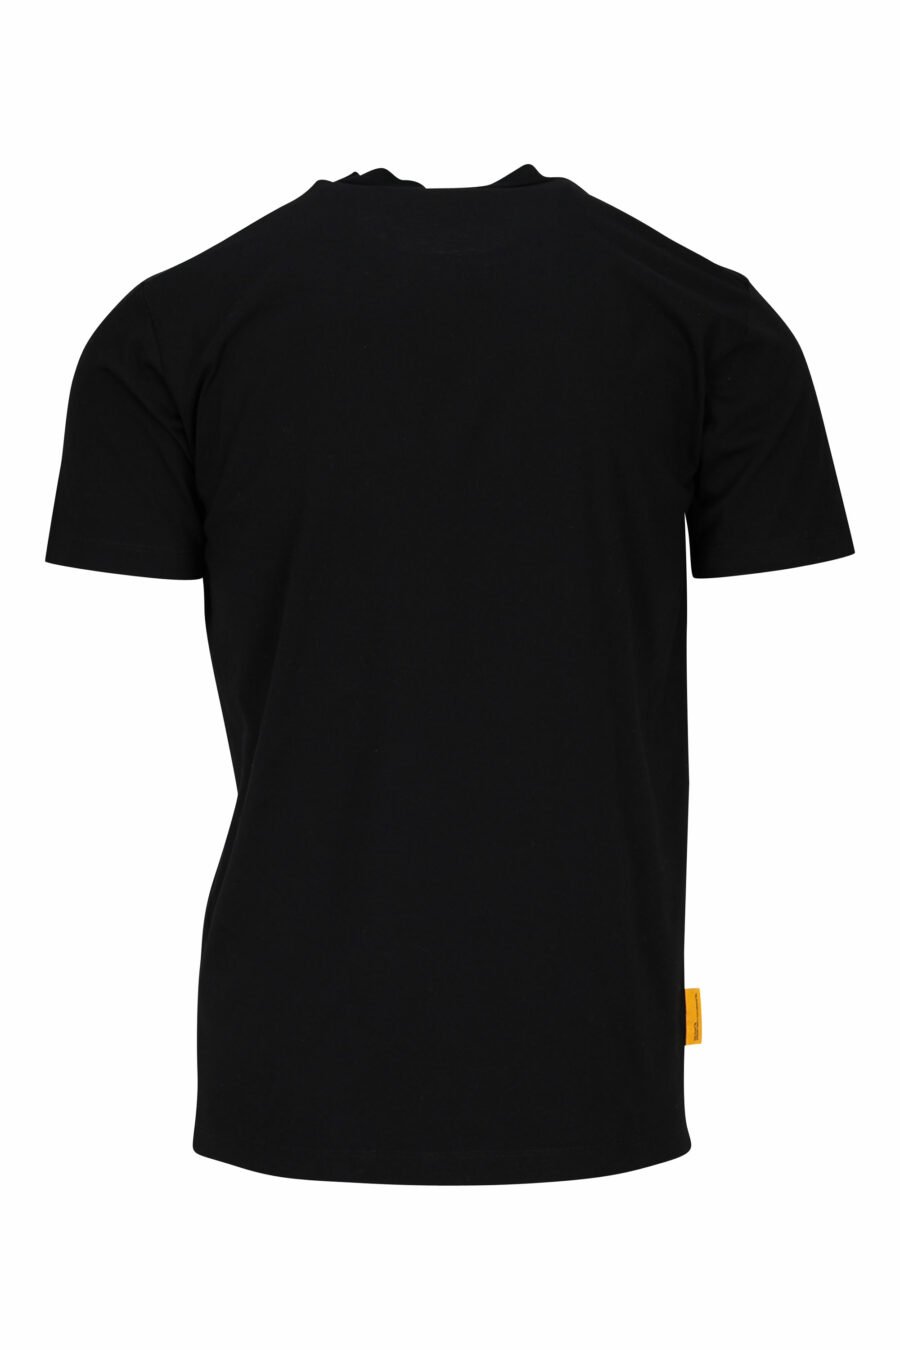 T-shirt preta com maxilogo do fantasma "pac-man" - 8054148203801 1